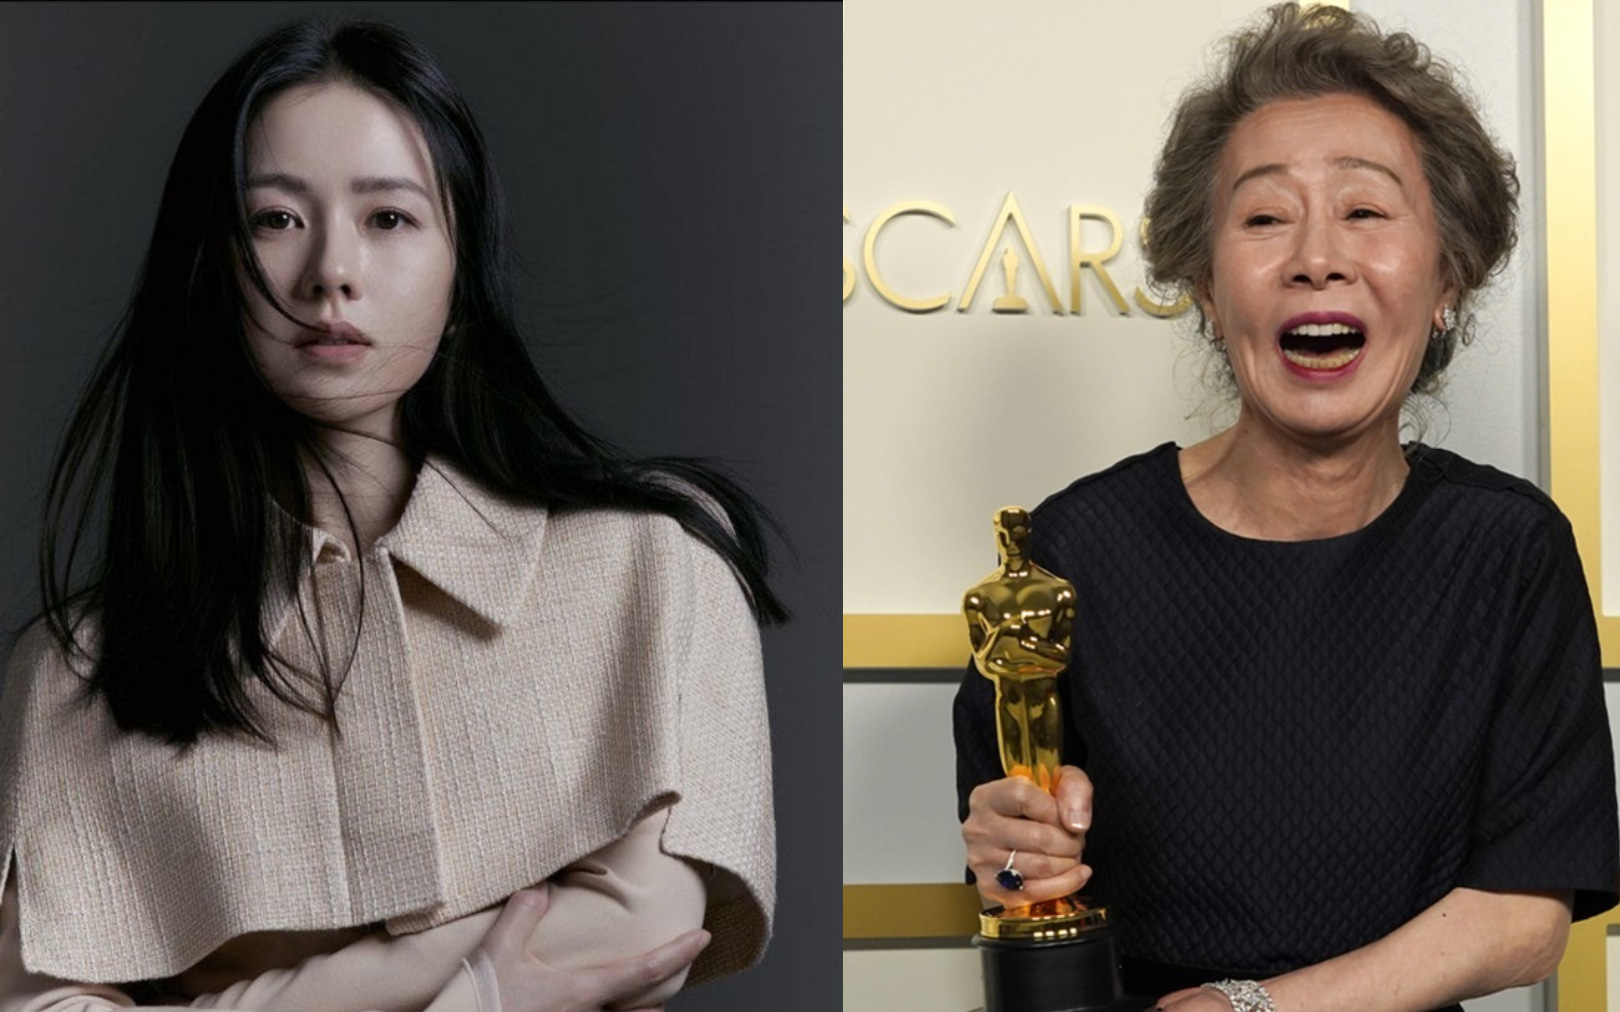 Son Ye Jin gây náo loạn với dự án đóng chung cùng nữ diễn viên 73 tuổi vừa đạt Oscar, nam chính đóng chung là một cái tên đình đám?